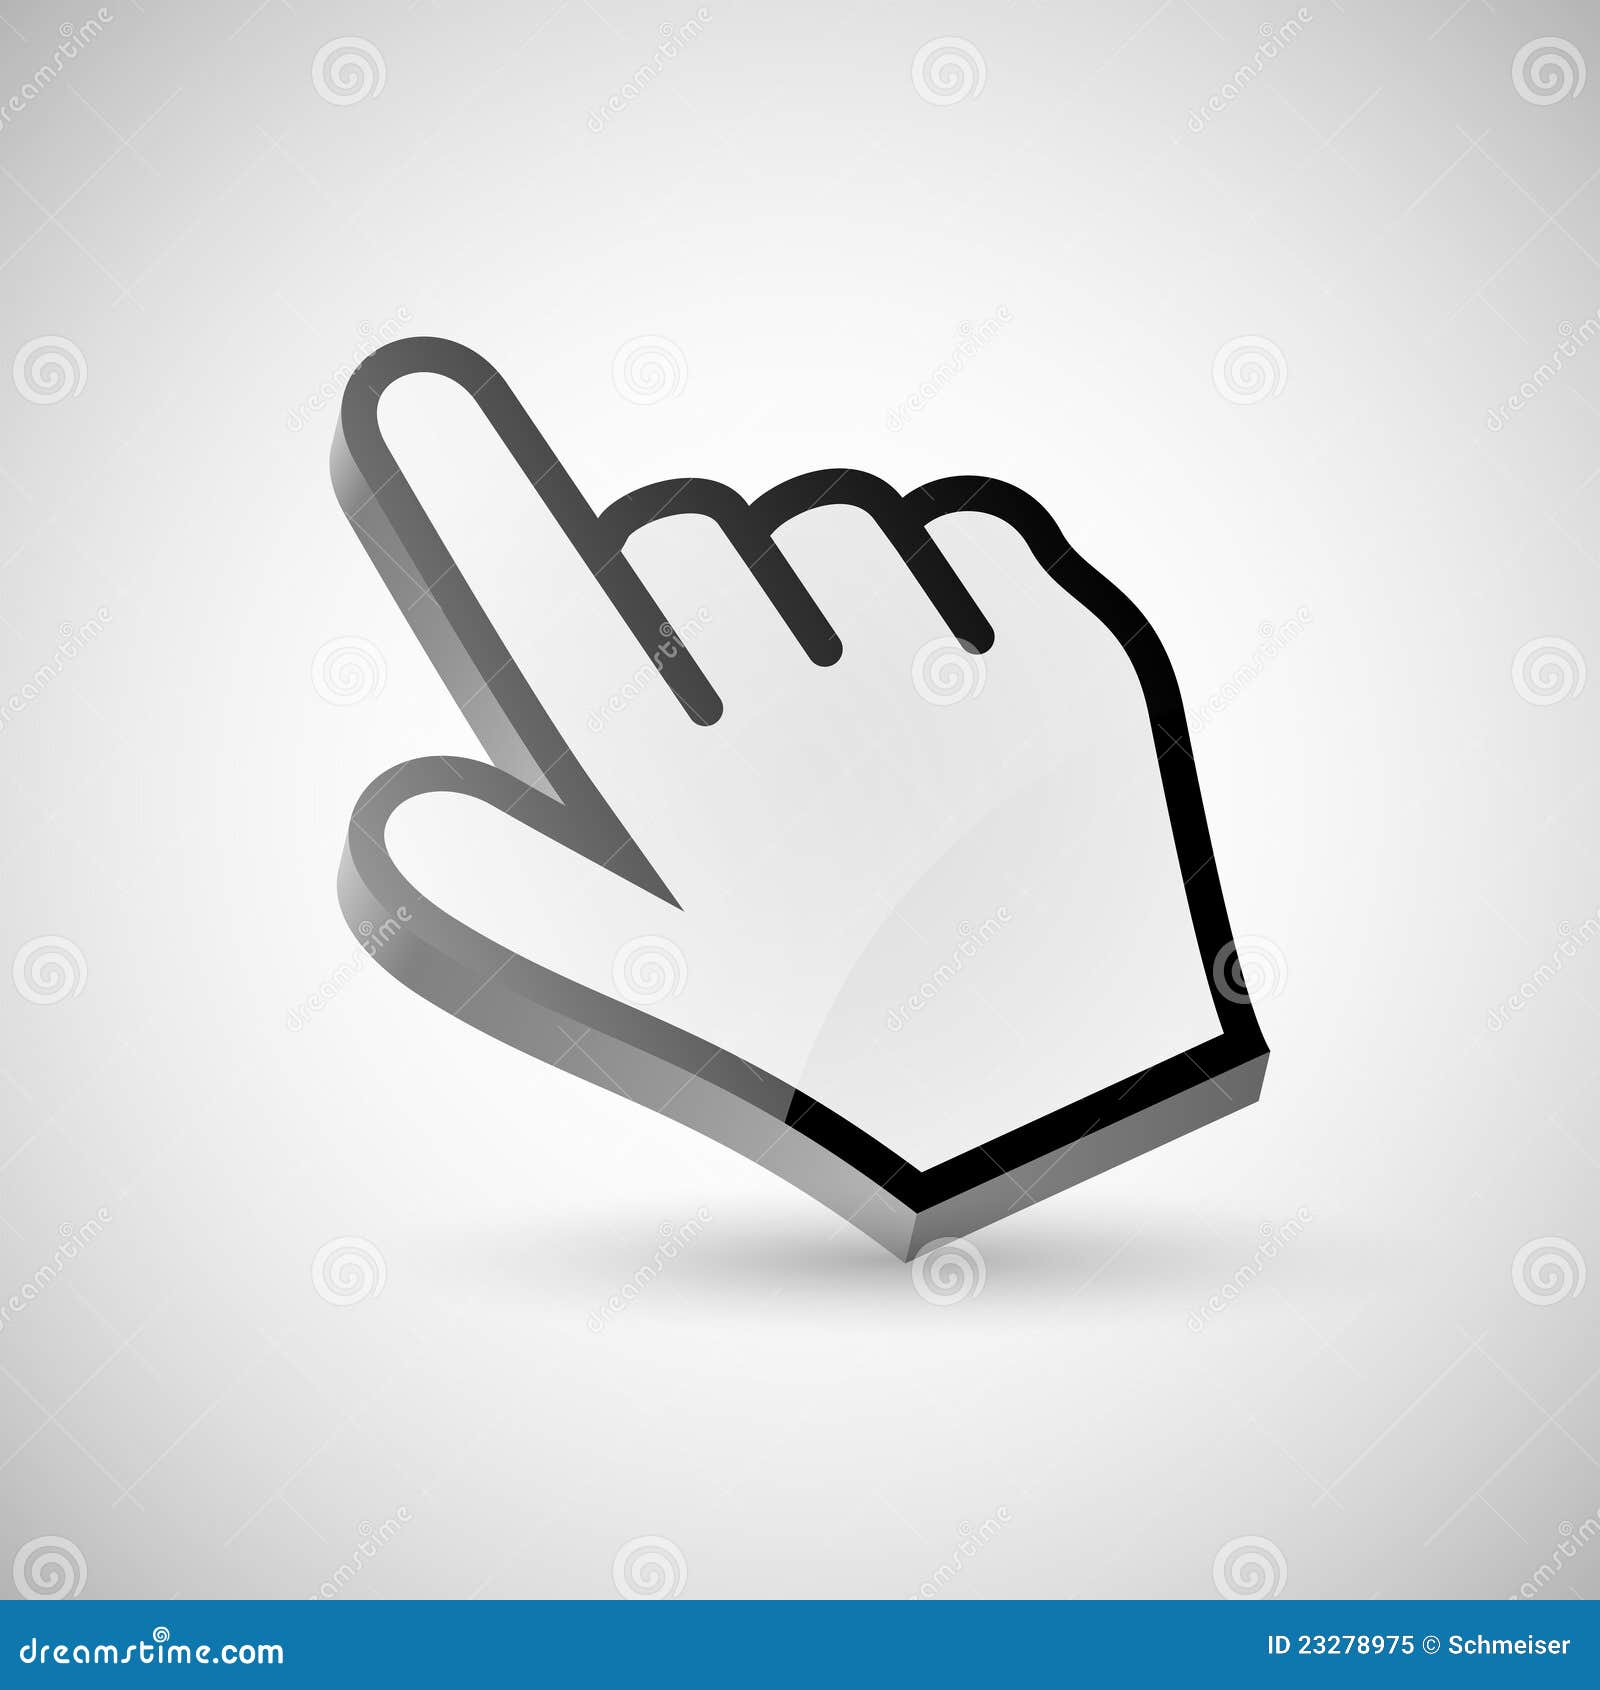 Hand mouse cursor clicks the fake button Vector Image